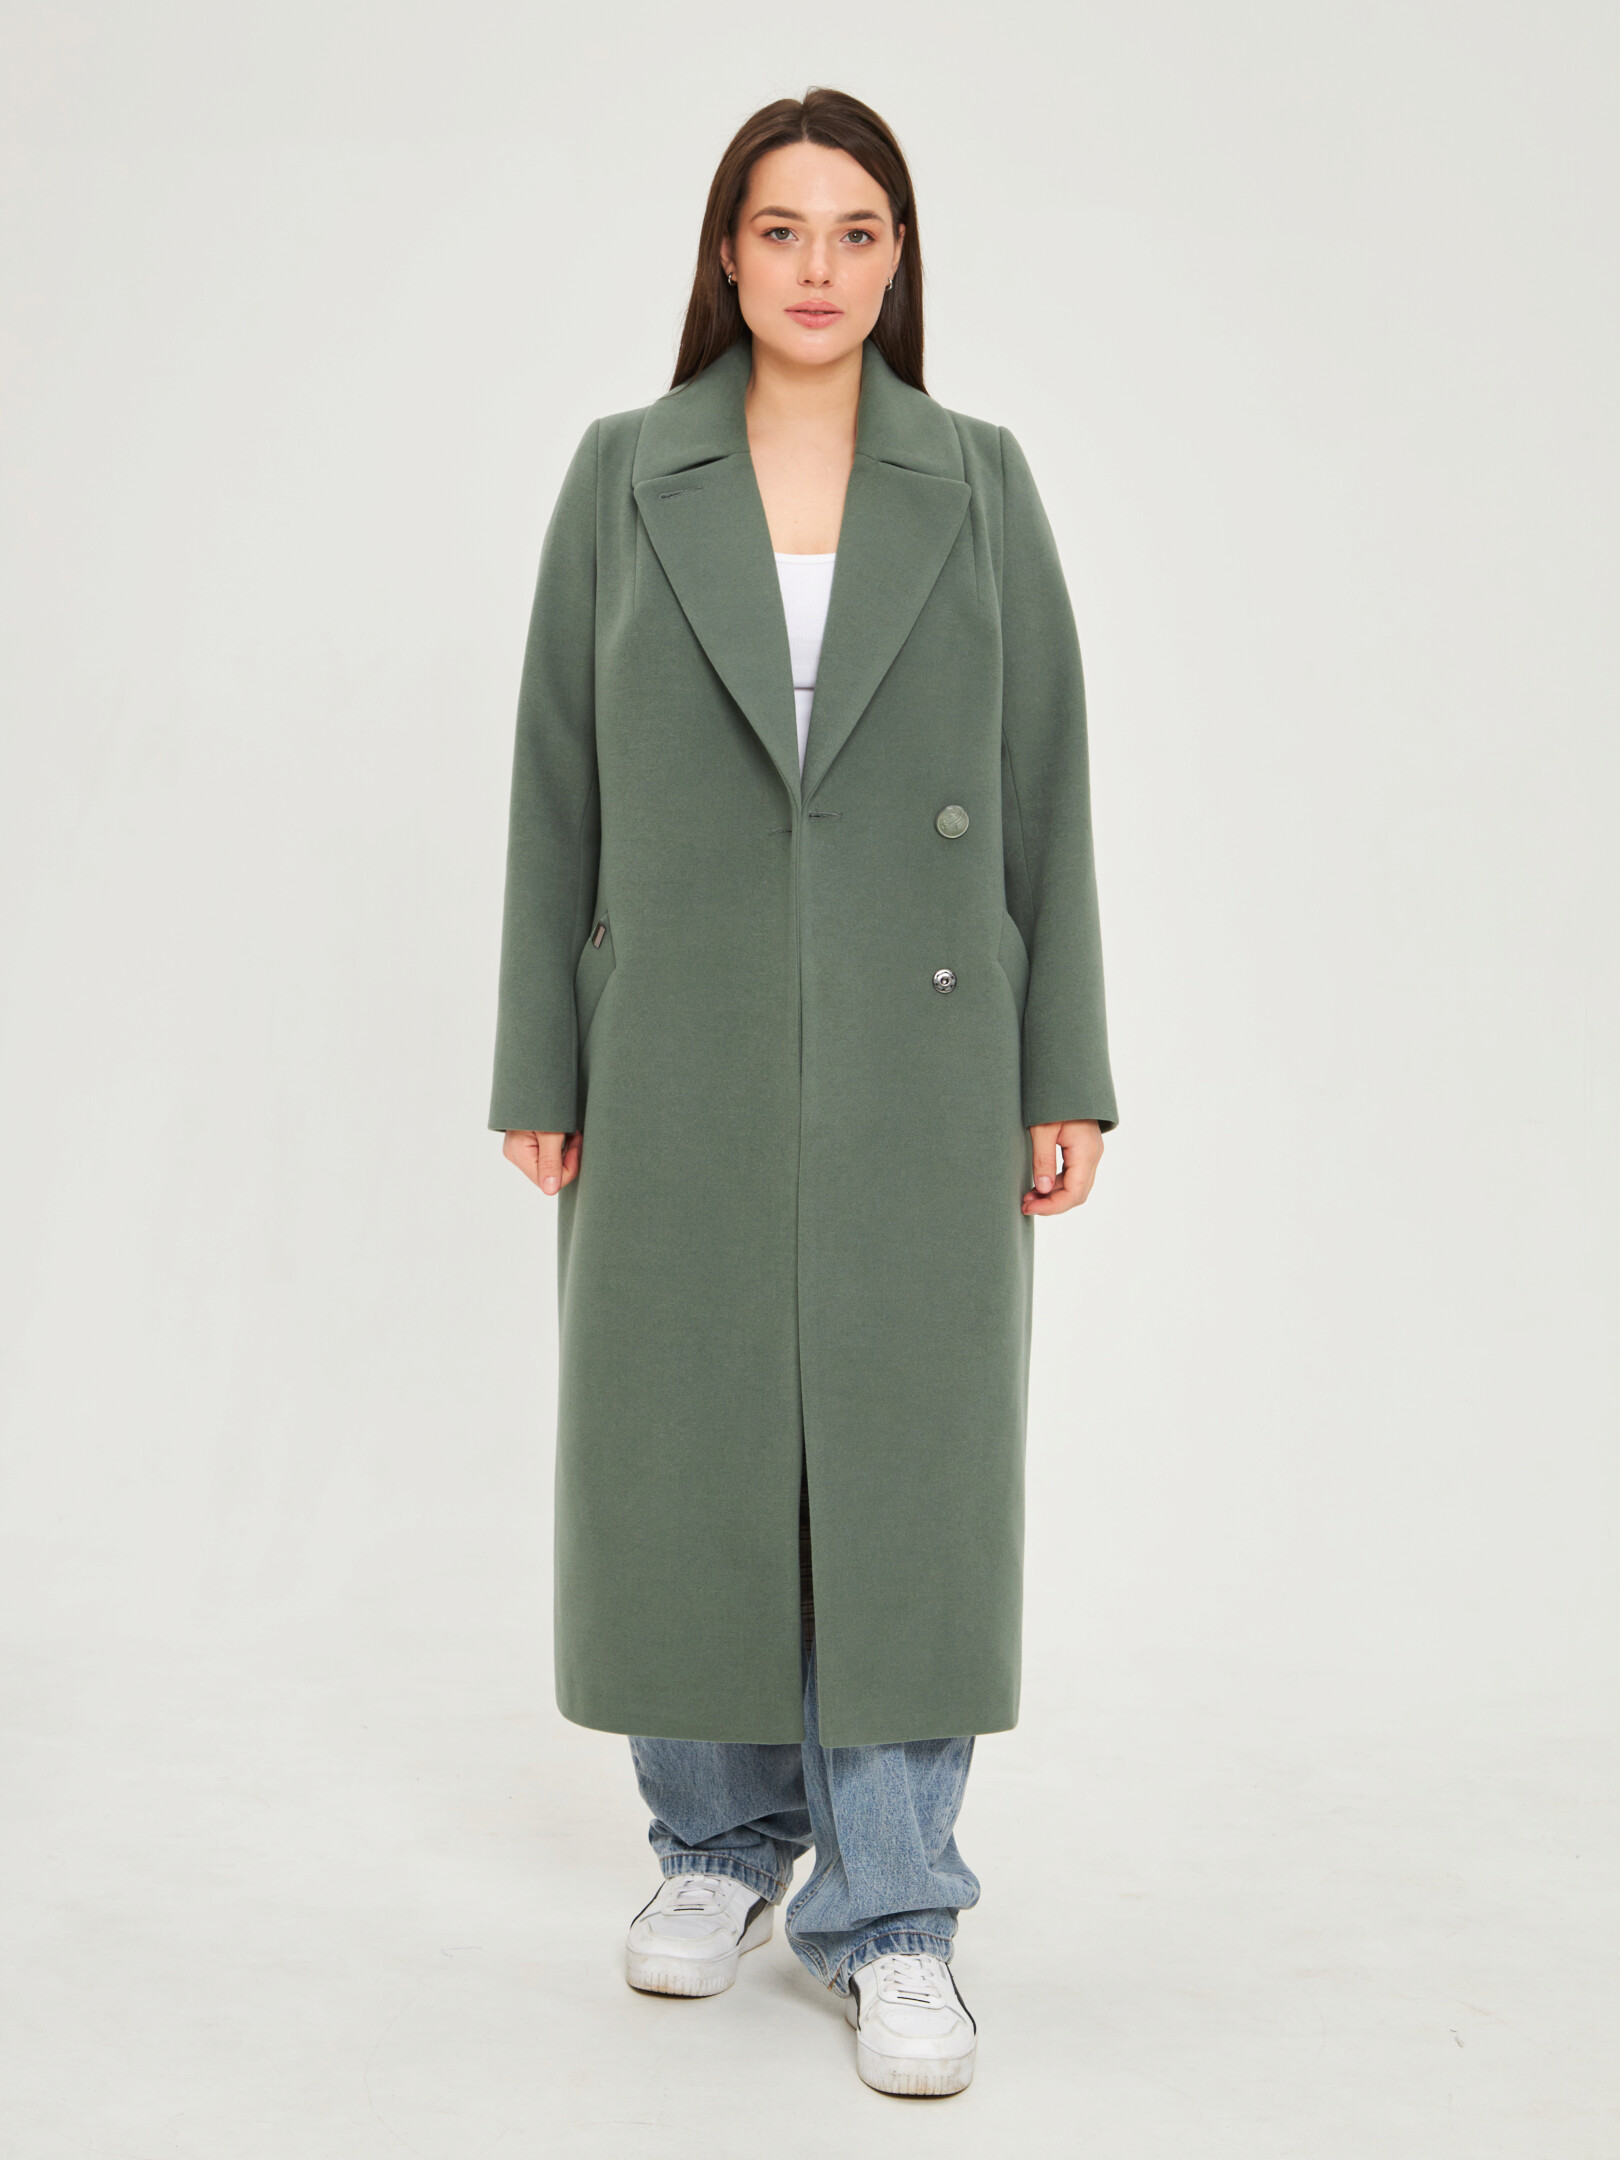 Пальто женское Каляев 66714 зеленое 52 RU